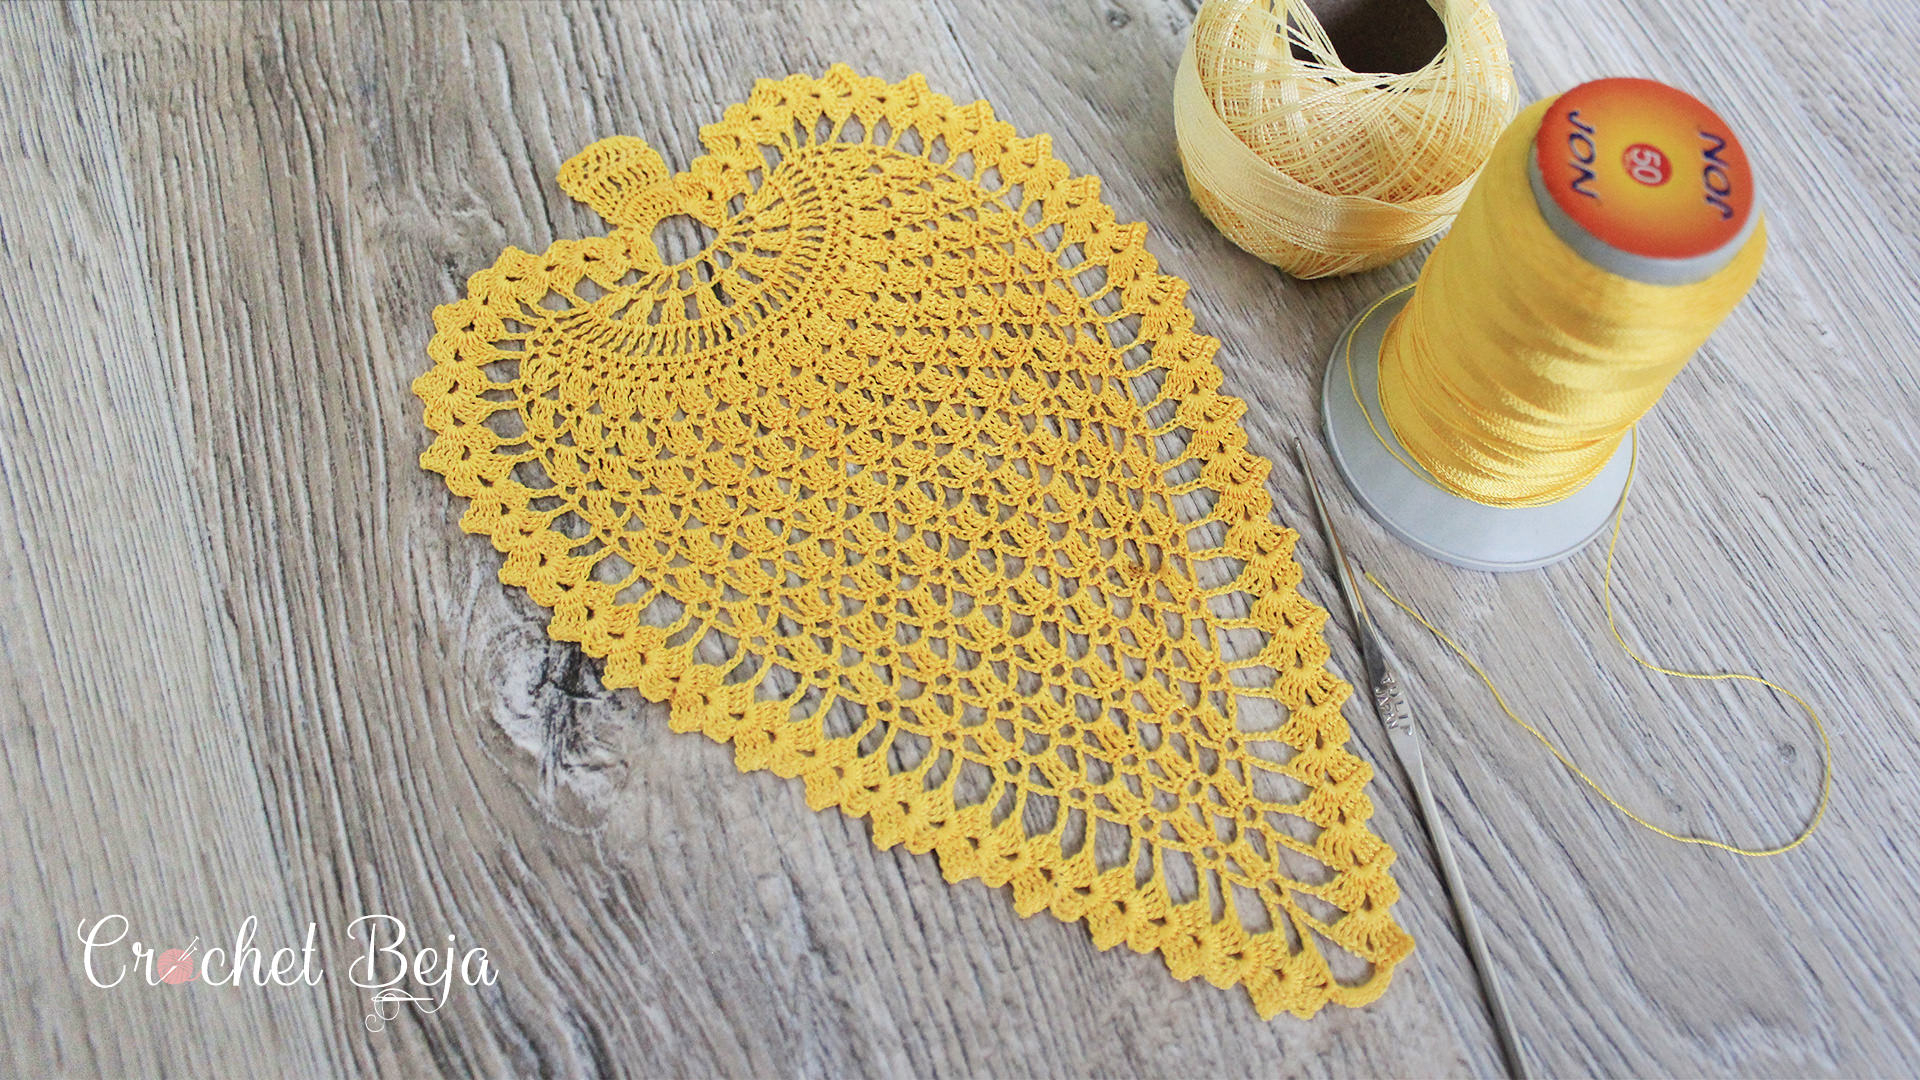 Crochet Pineapple Pattern Crochet Pineapple Pattern Anywane Can Learn Crochetbeja